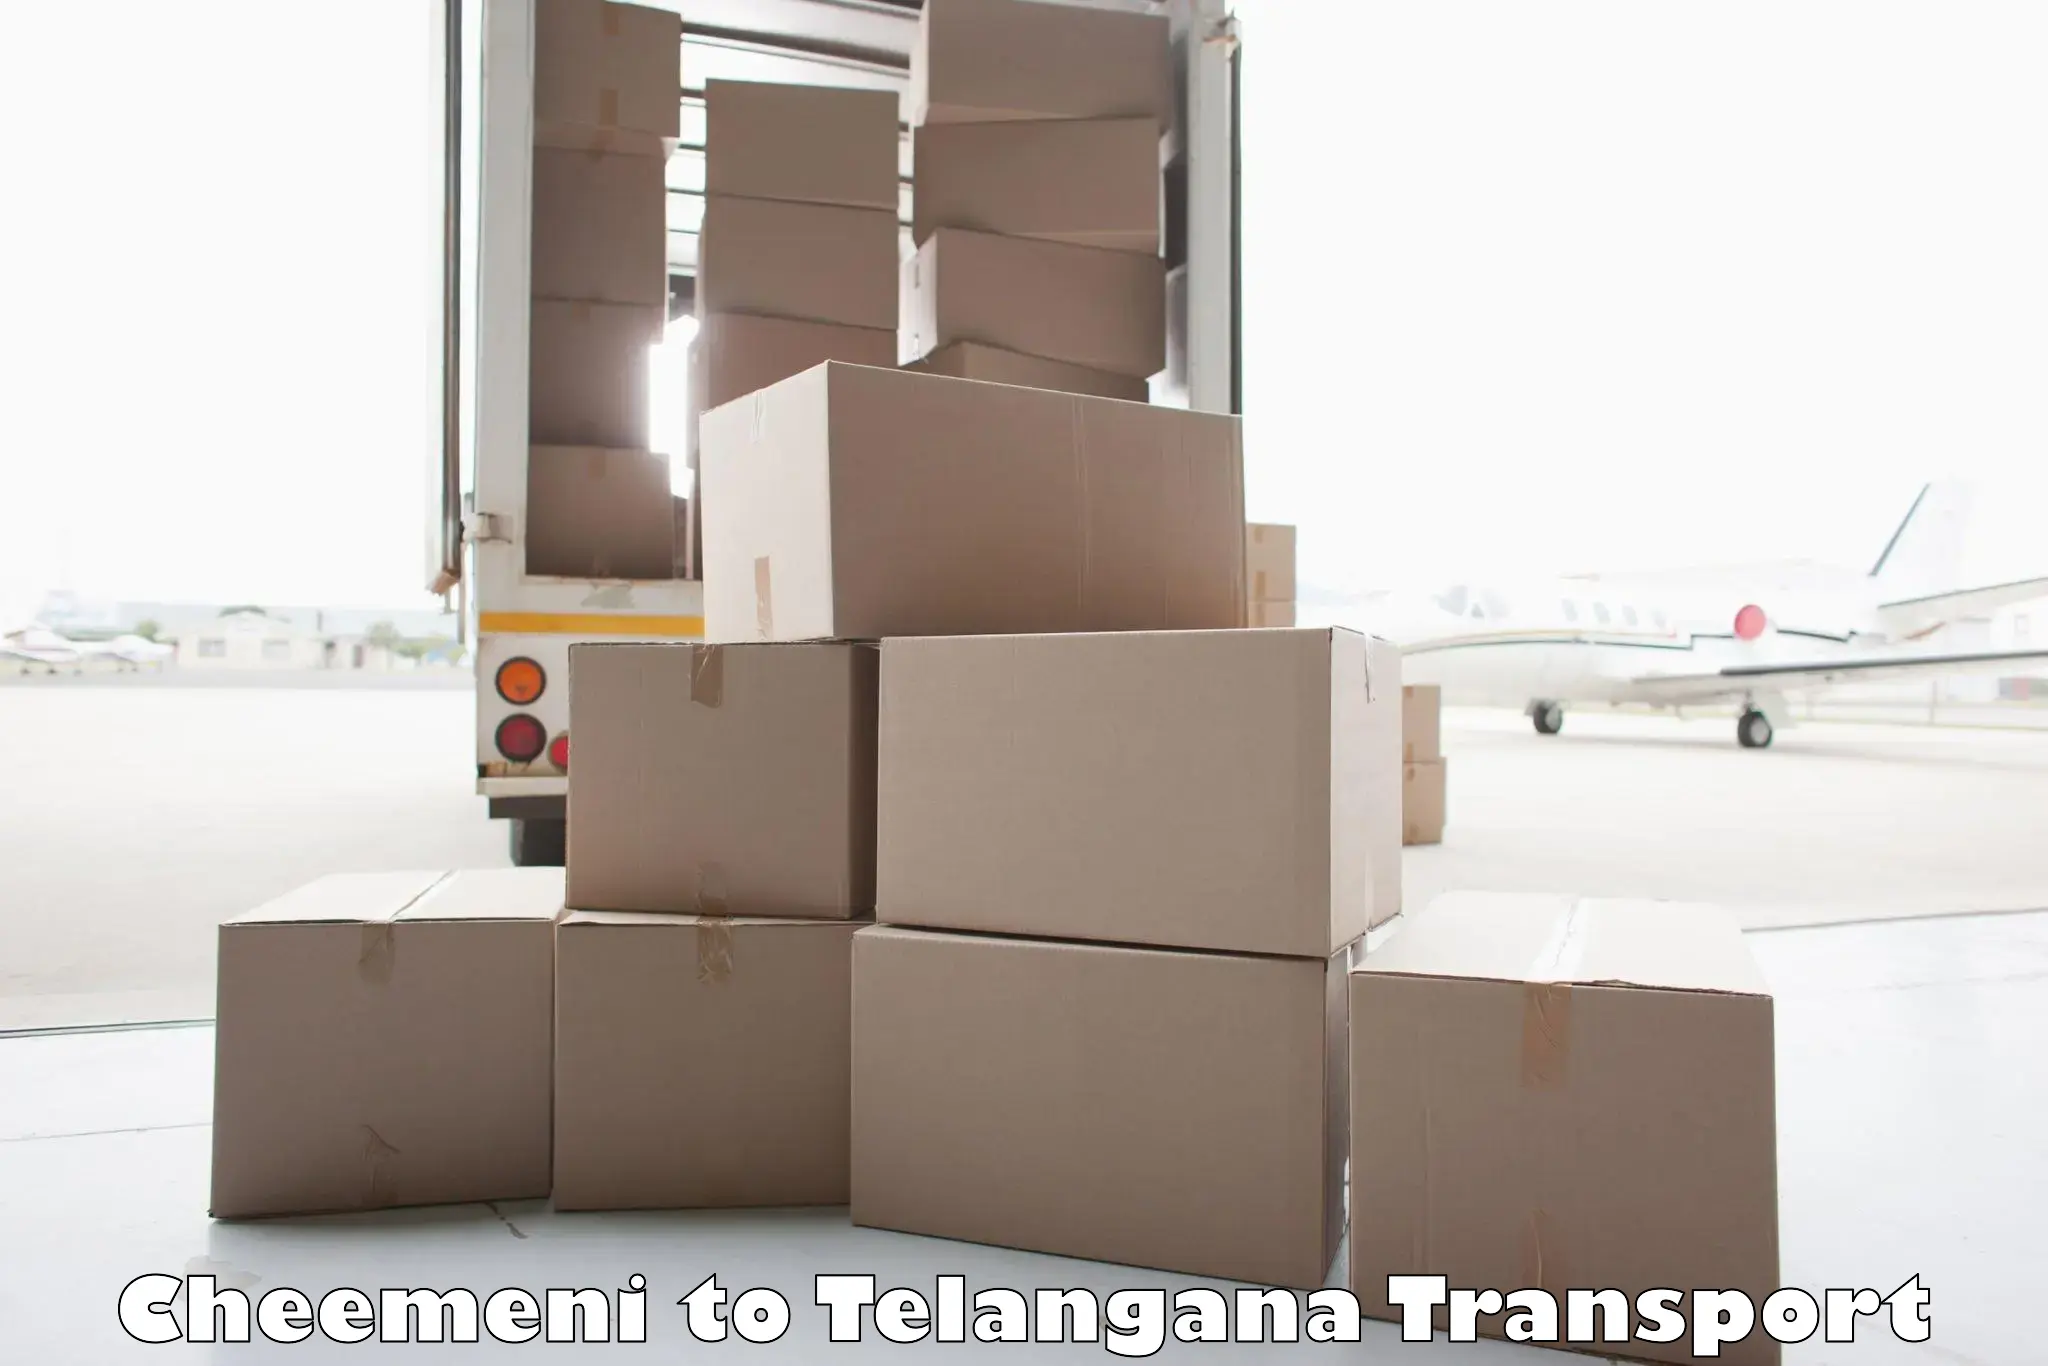 Container transport service Cheemeni to Telangana